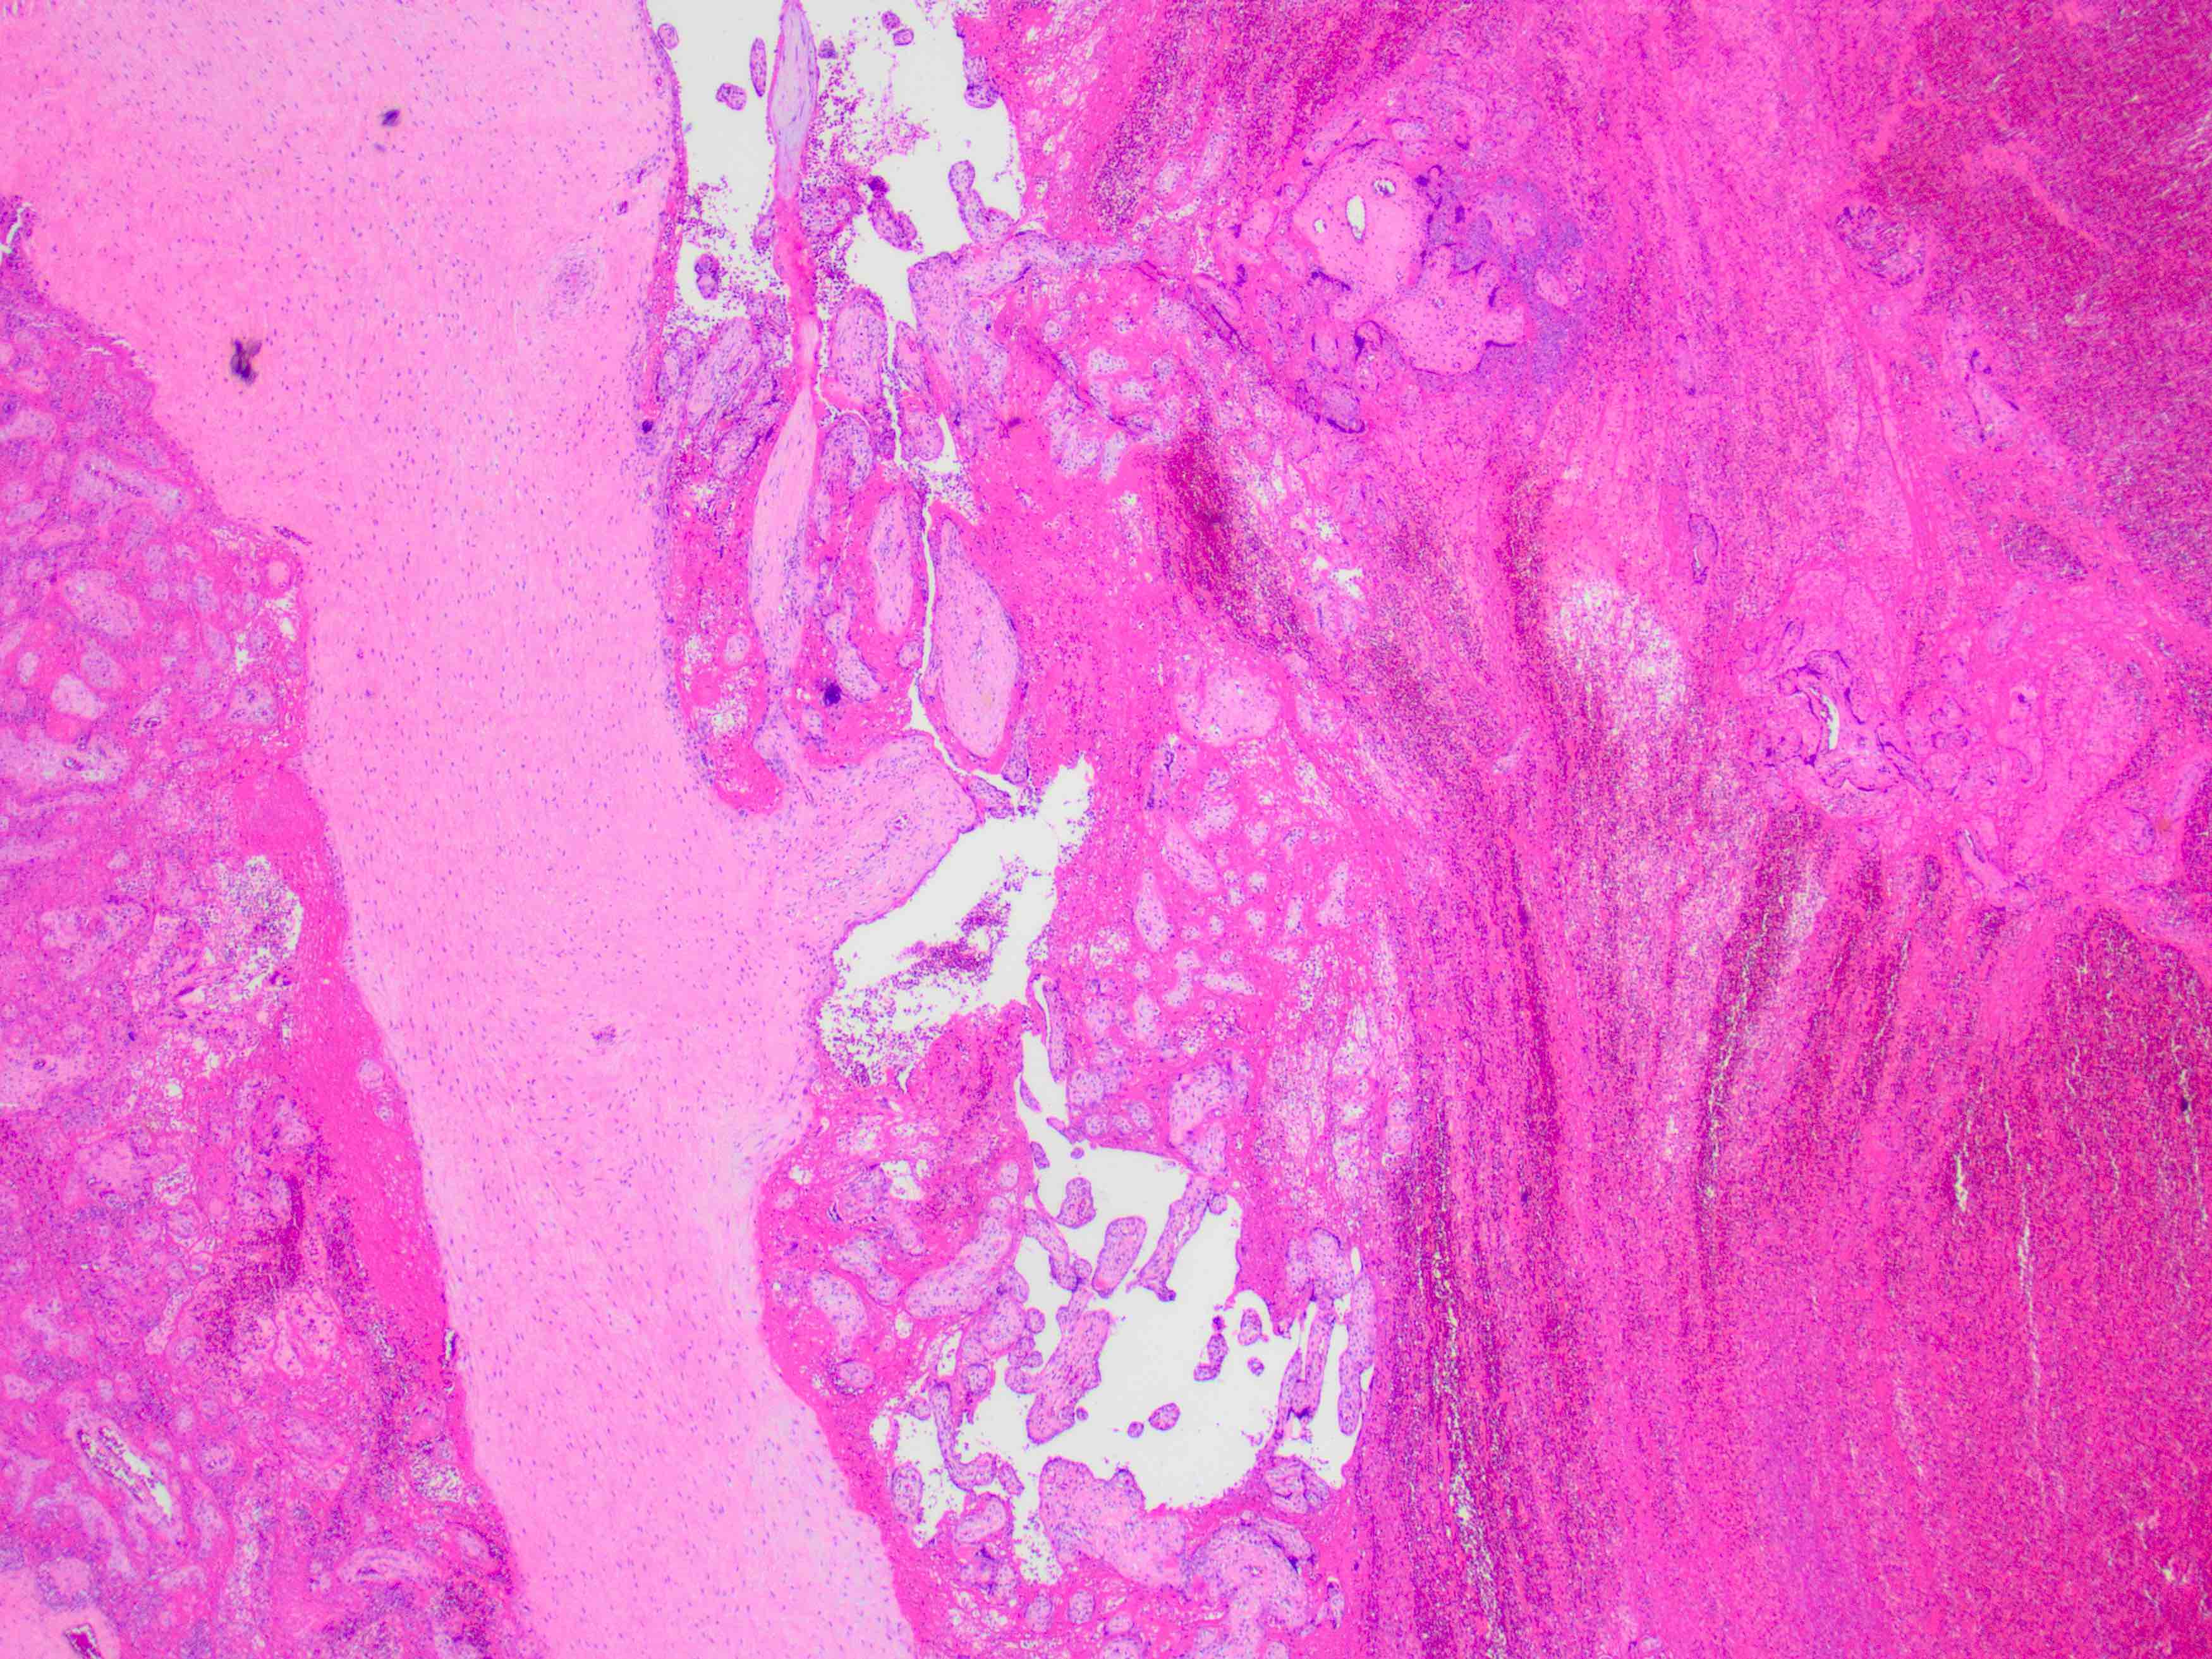 Perivillous fibrin deposition and intervillous thrombus